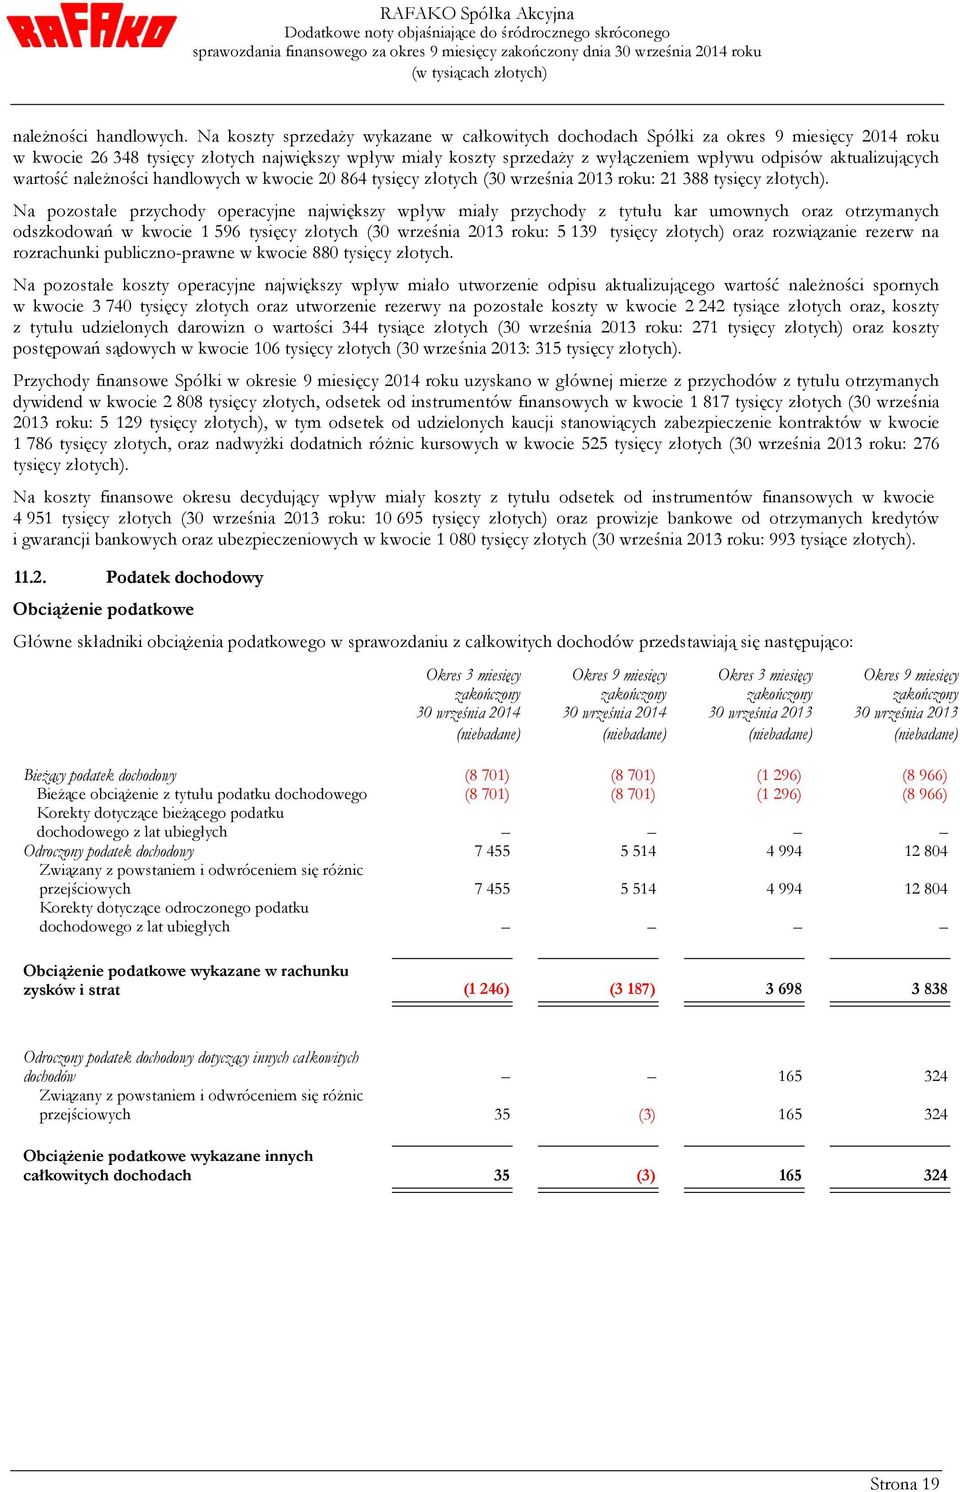 aktualizujących wartość należności handlowych w kwocie 20 864 tysięcy złotych (30 września 2013 roku: 21 388 tysięcy złotych).